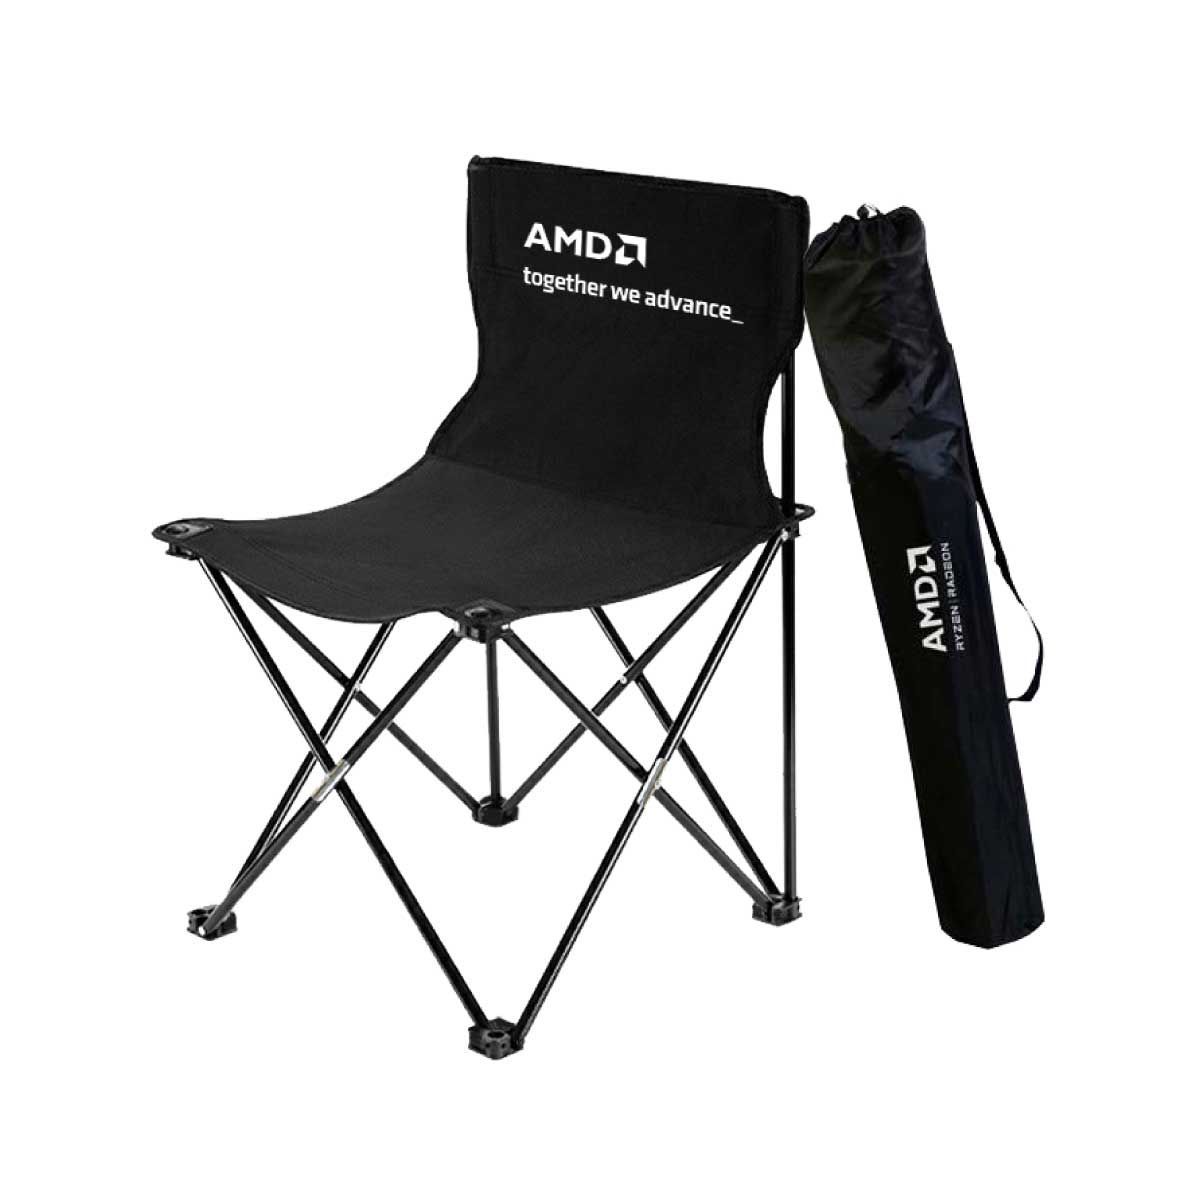 AMD เก้าอี้แคมป์ปิ้ง